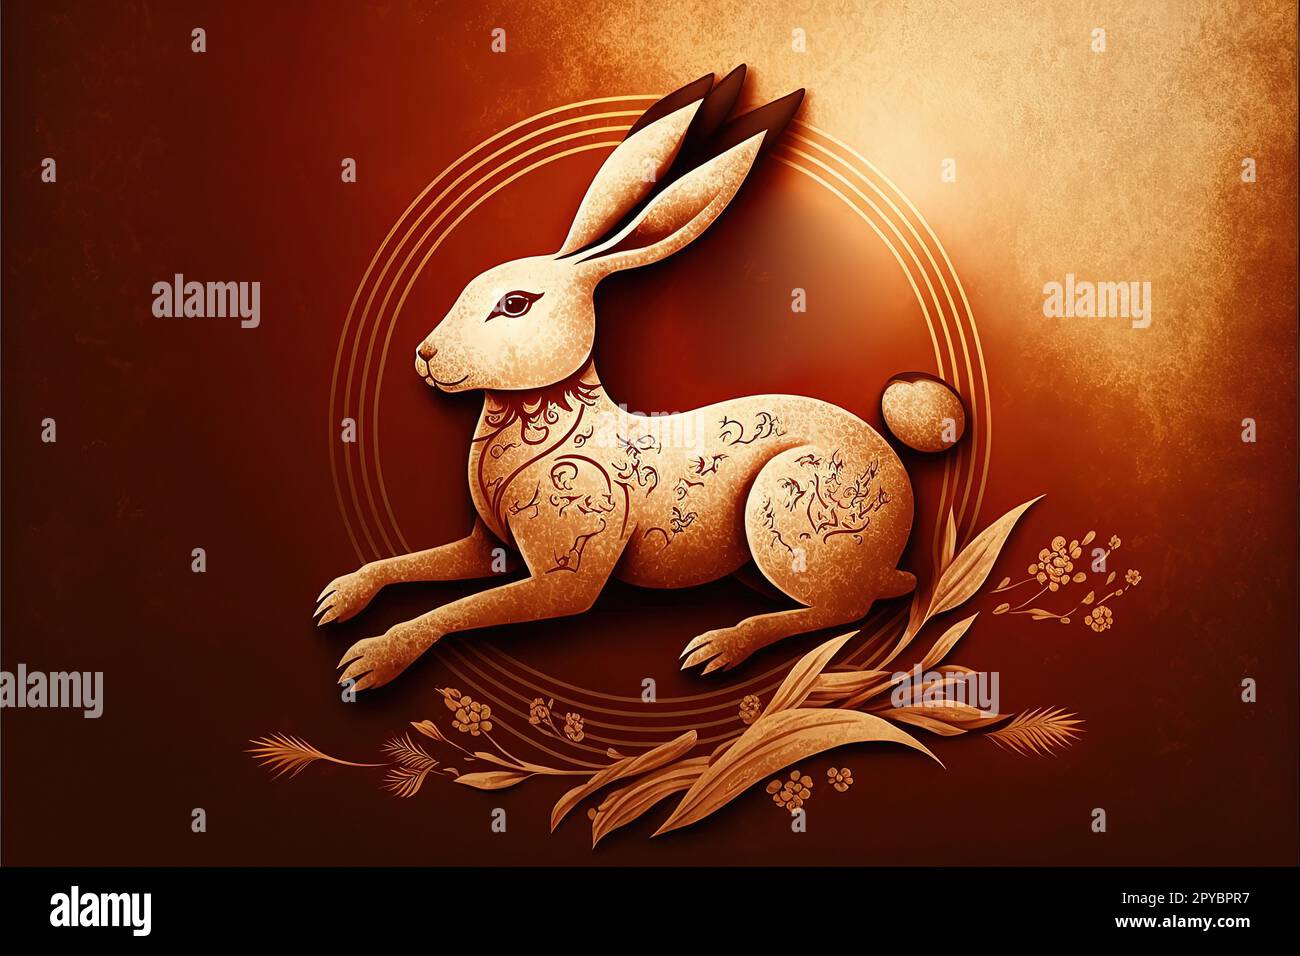 Symbole lapin pour une bonne année chinoise. Chinois traditionnel. La traduction chinoise est l'année moyenne du lapin heureux nouvel an chinois Banque D'Images